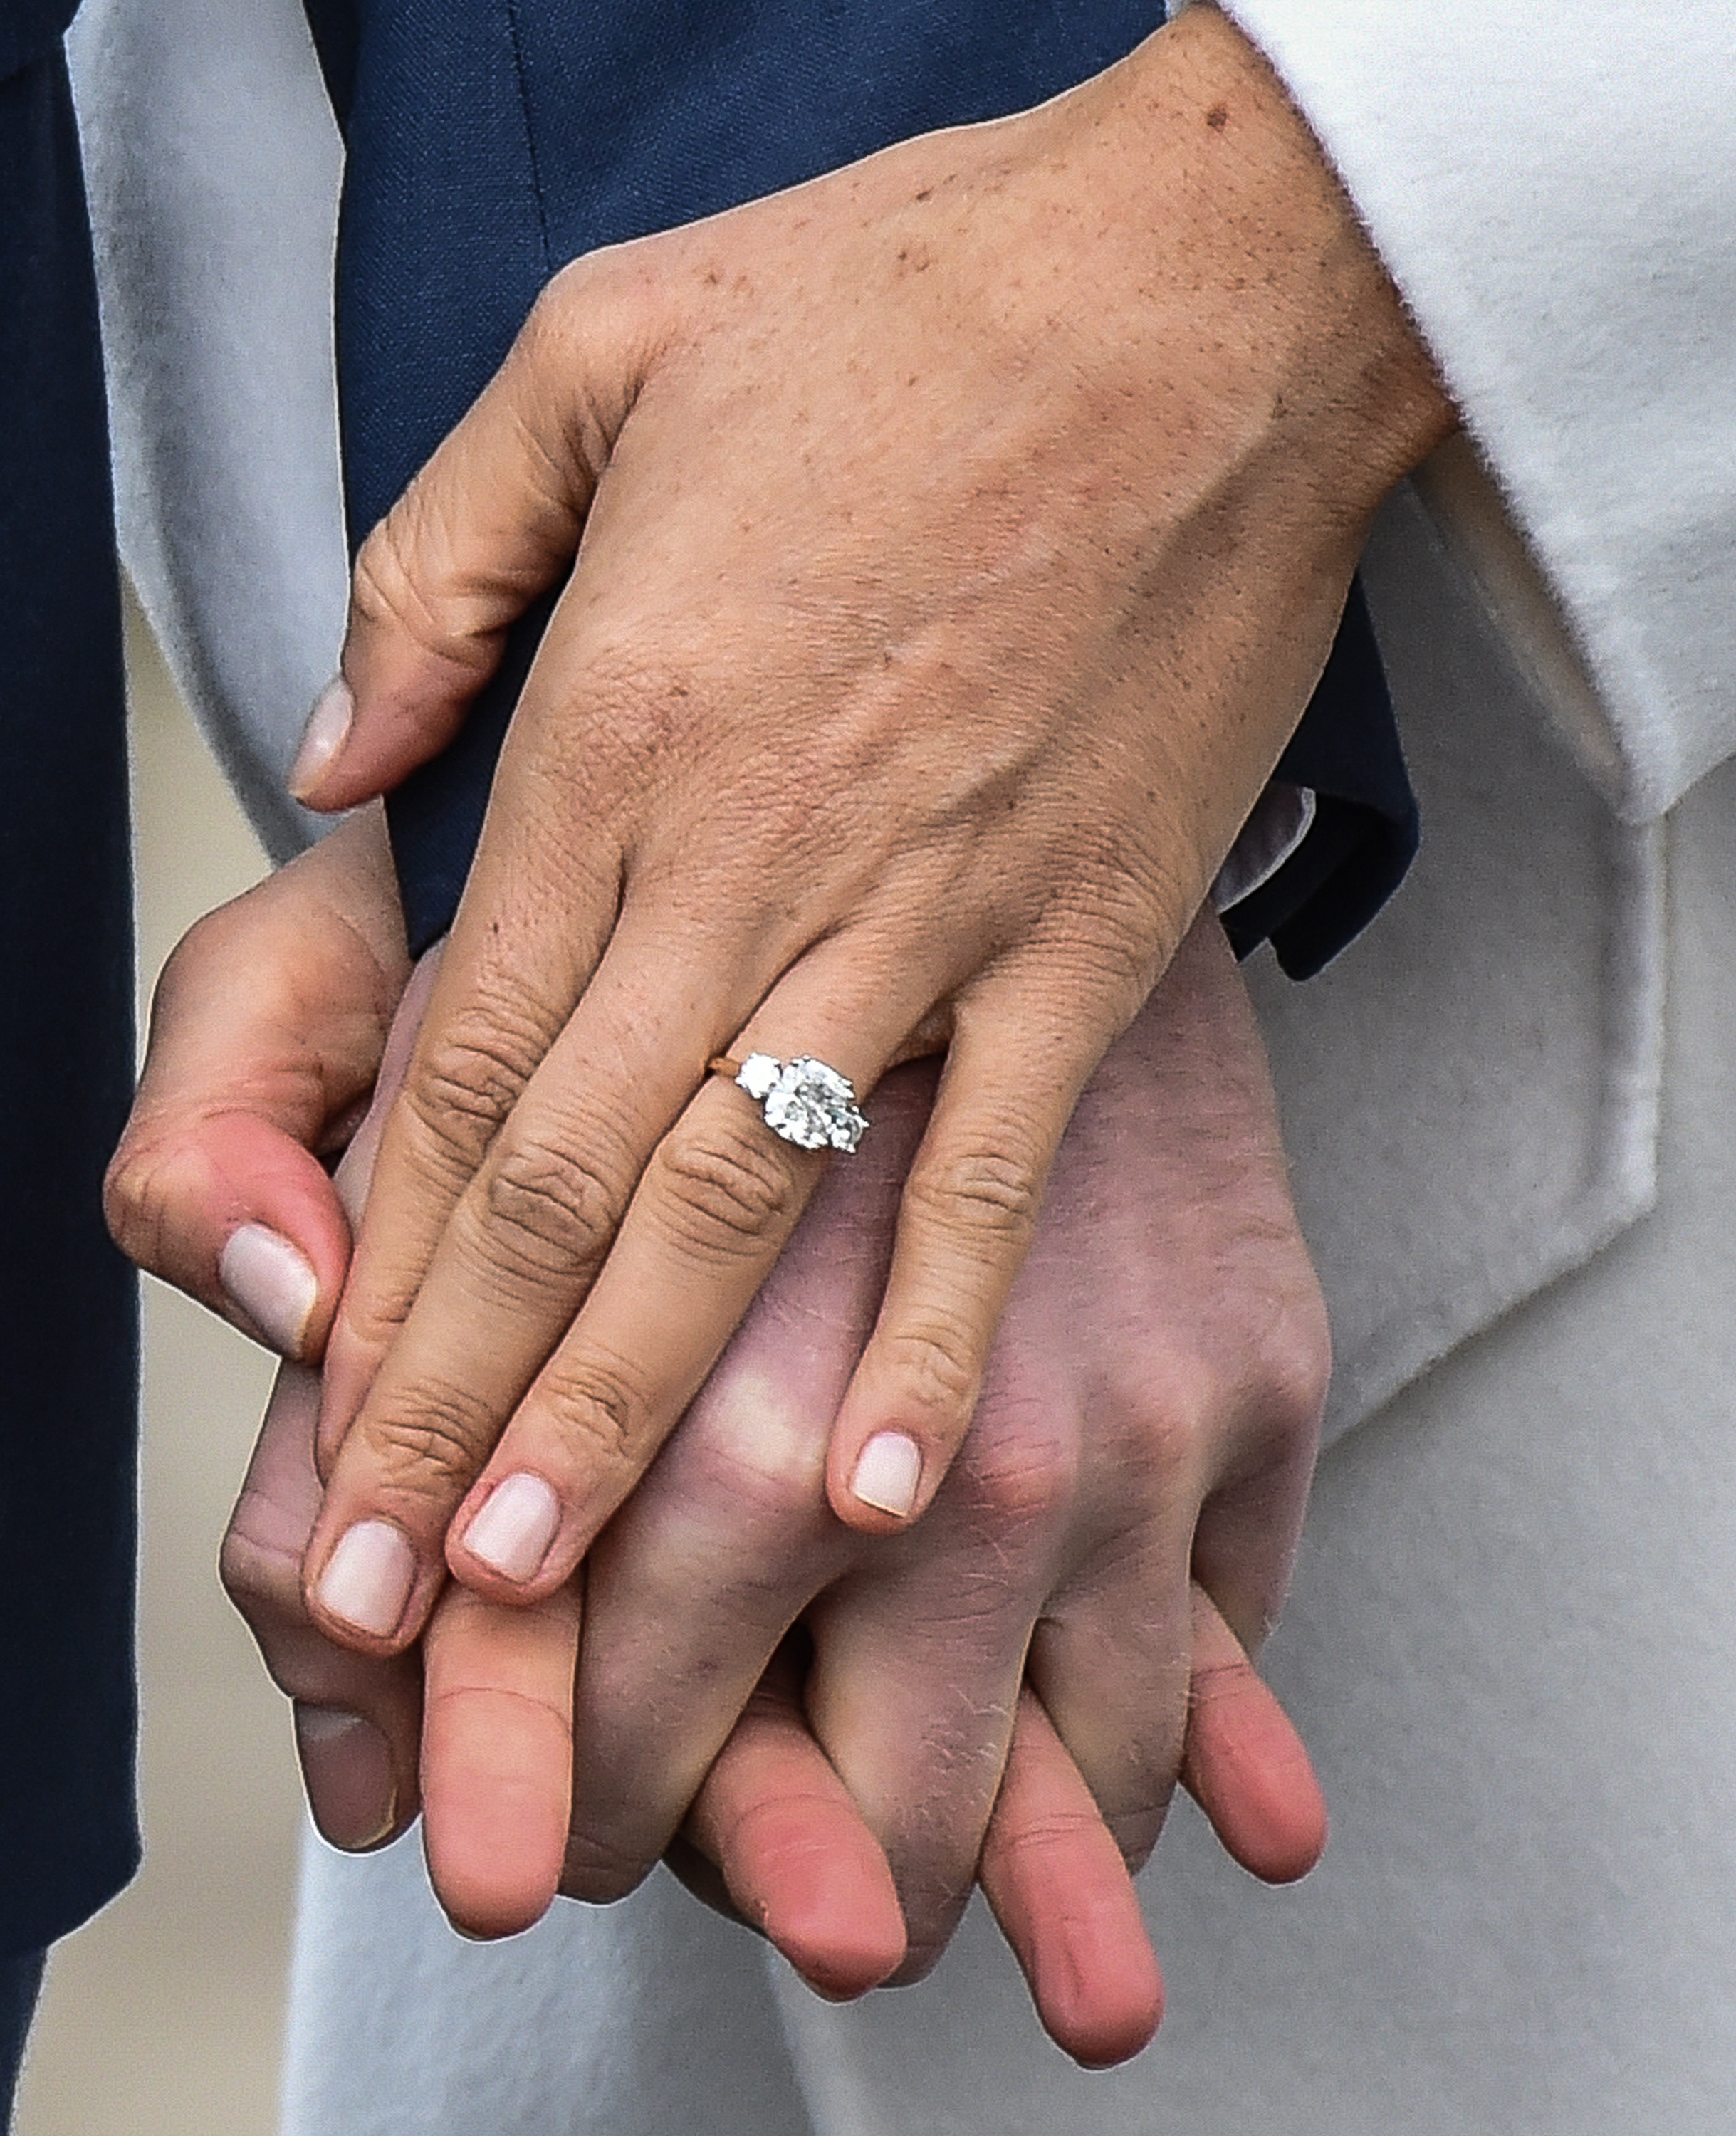 Почему обручальное кольцо носят на левой руке